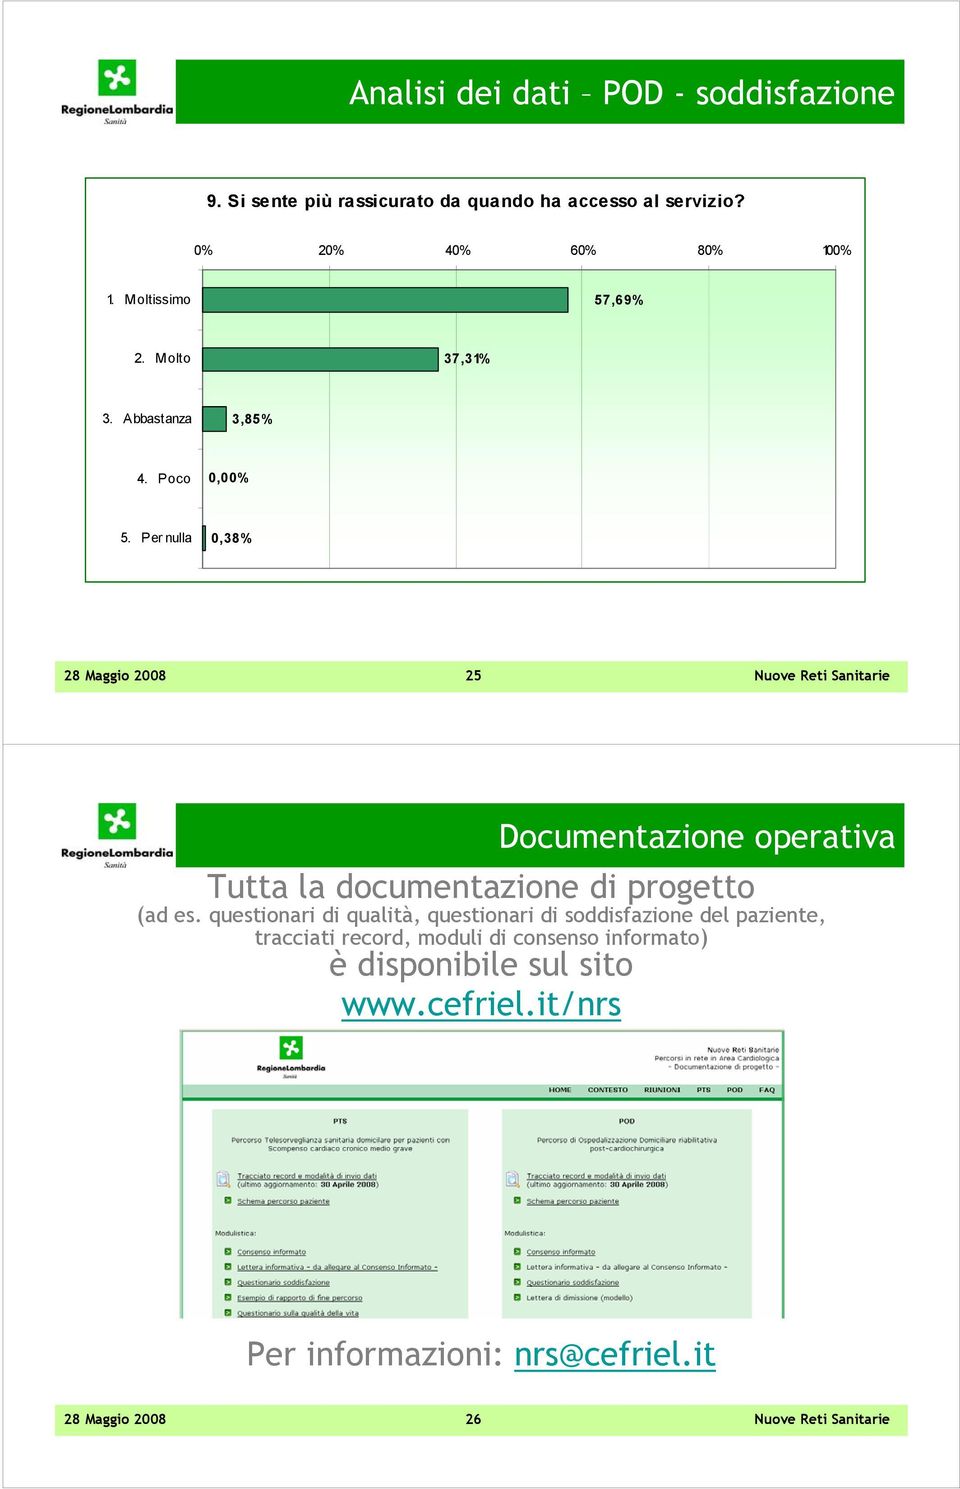 Per nulla 0,38% 28 Maggio 2008 25 Documentazione operativa Tutta la documentazione di progetto (ad es.